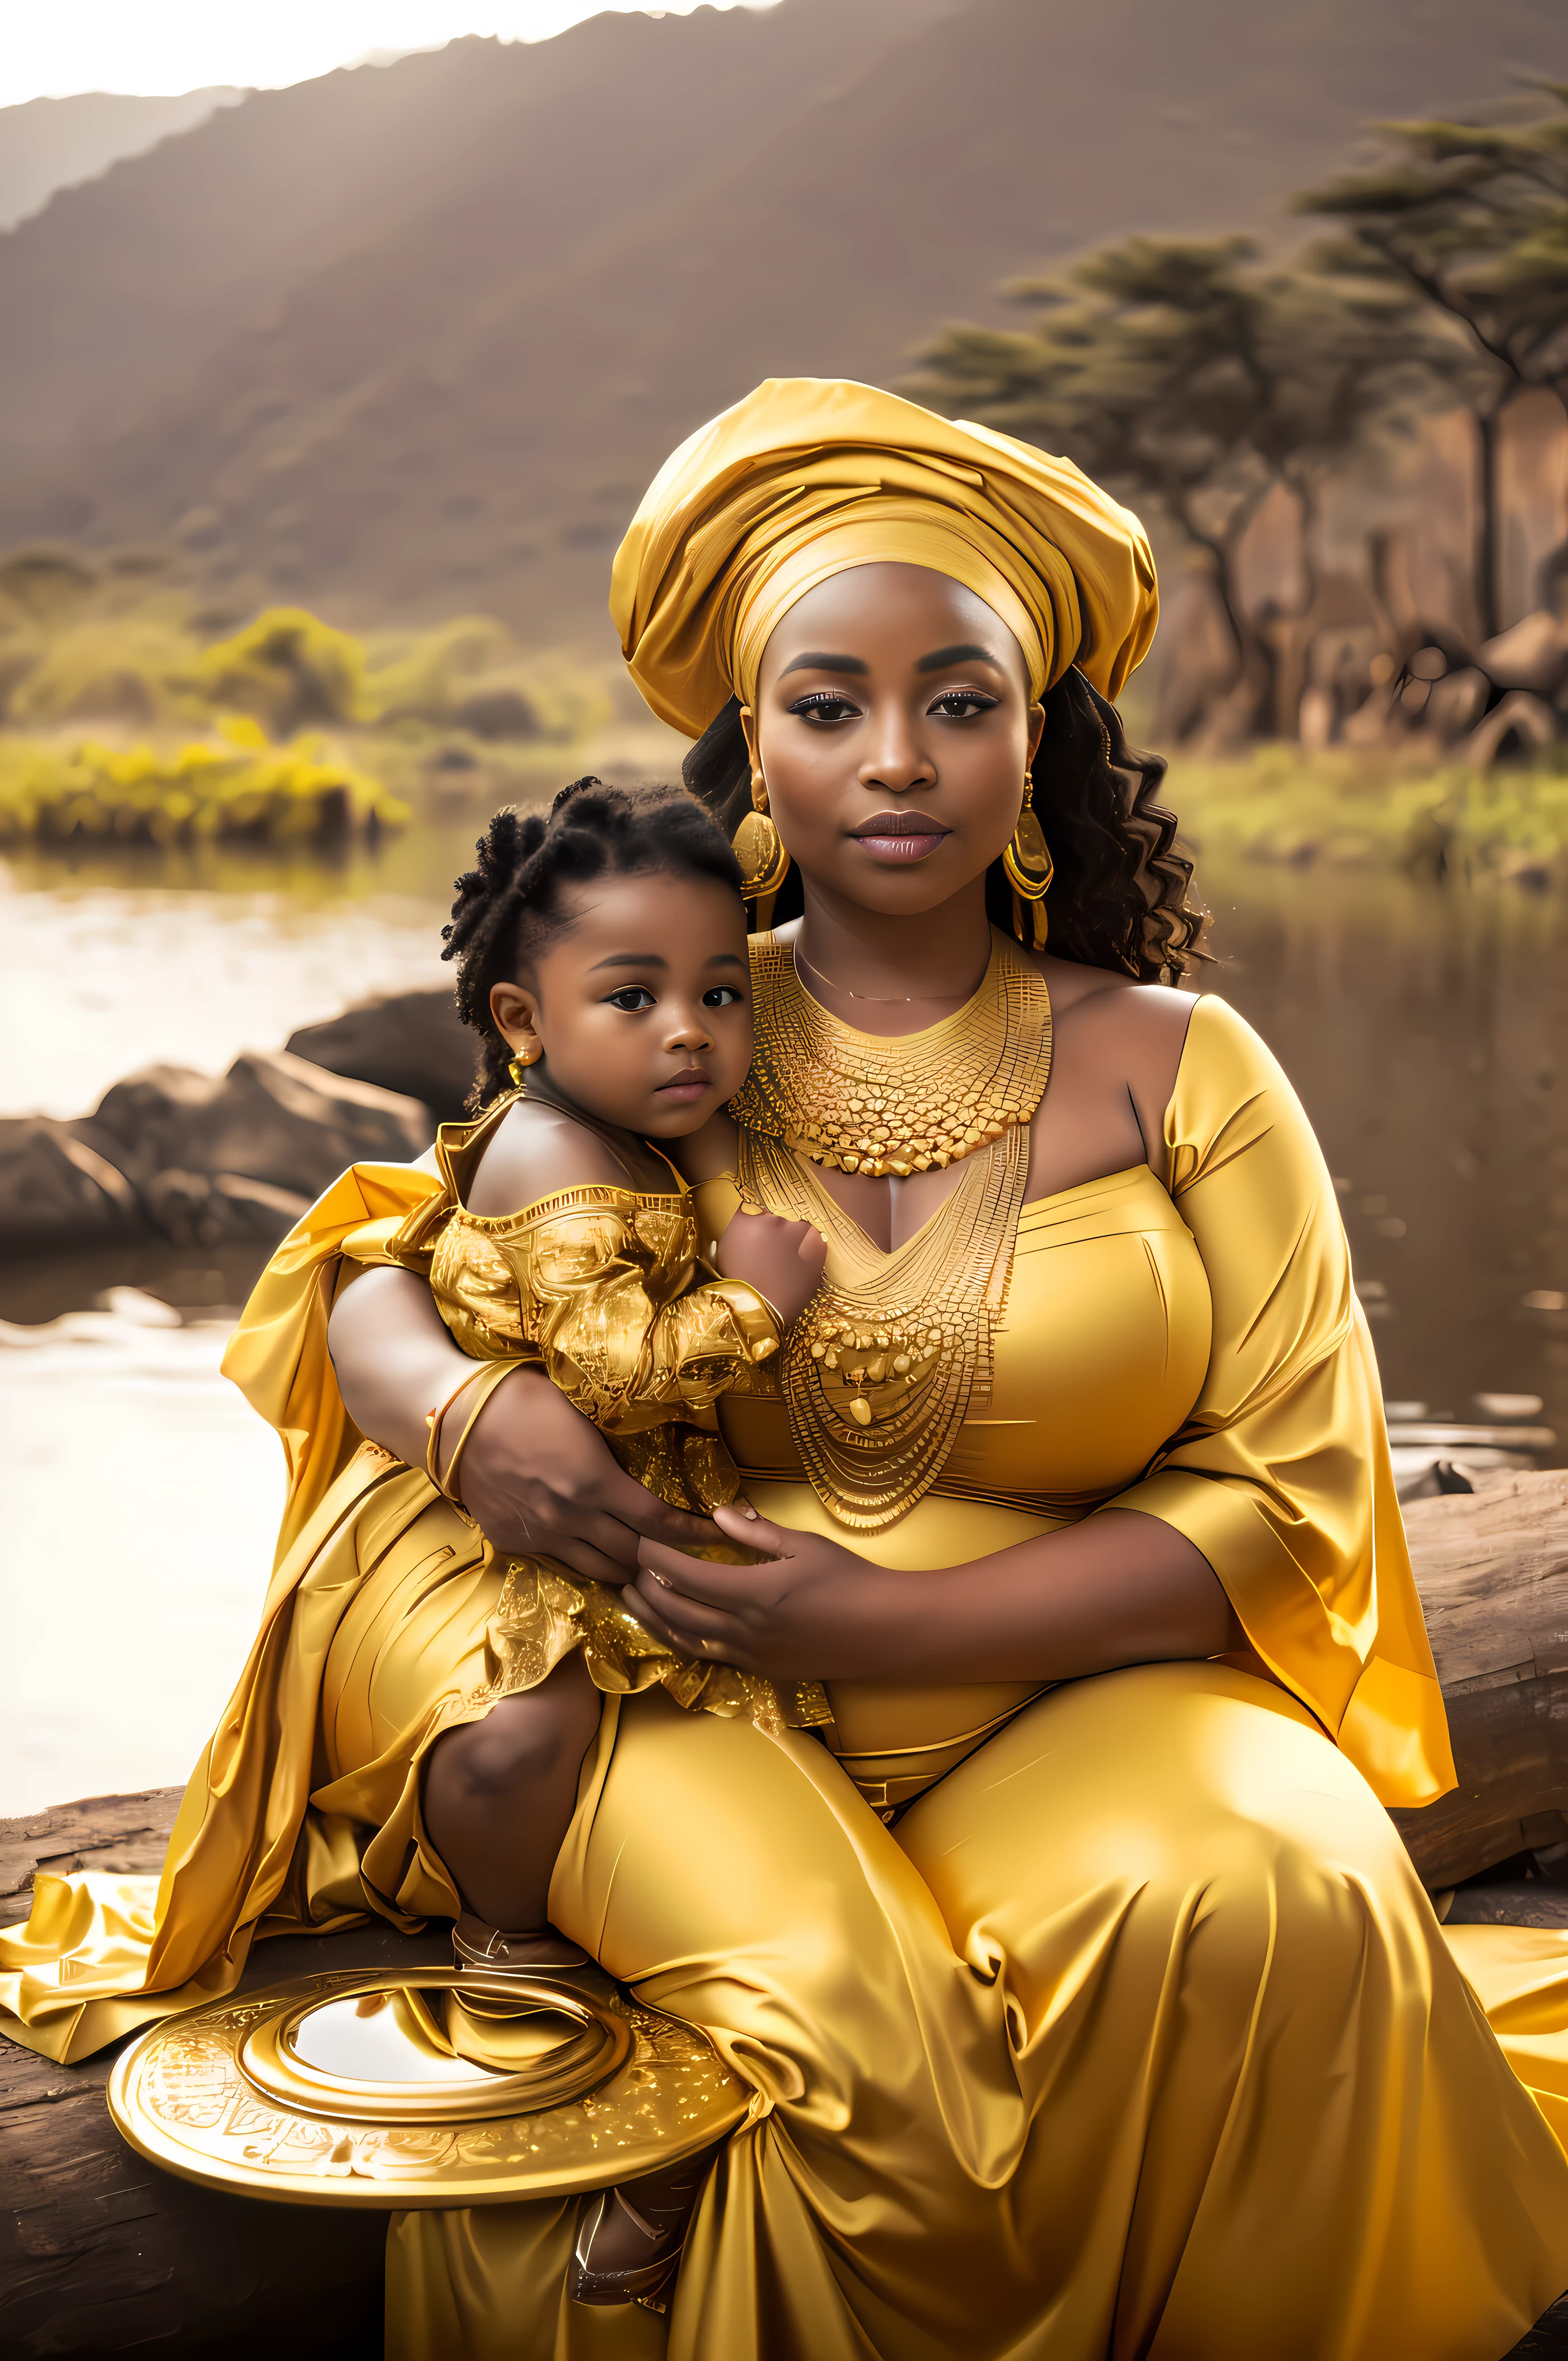 赤ん坊を抱く金のドレスを着た妊婦, Princesa アフリカ人a deslumbrante, Princesa negra アフリカ人a, Rainha アフリカ人a, アフリカの王女, 金色の色調, 美しい写真, 金の色合いが自然に現れます, mulher アフリカ人a, 母体写真4K, きれいな女性, 伝統美, アフリカ人, 金で覆われている sedoso, Joias アフリカ人as intrincadas, 黄金色, 黄金のオーラ, 金で覆われている